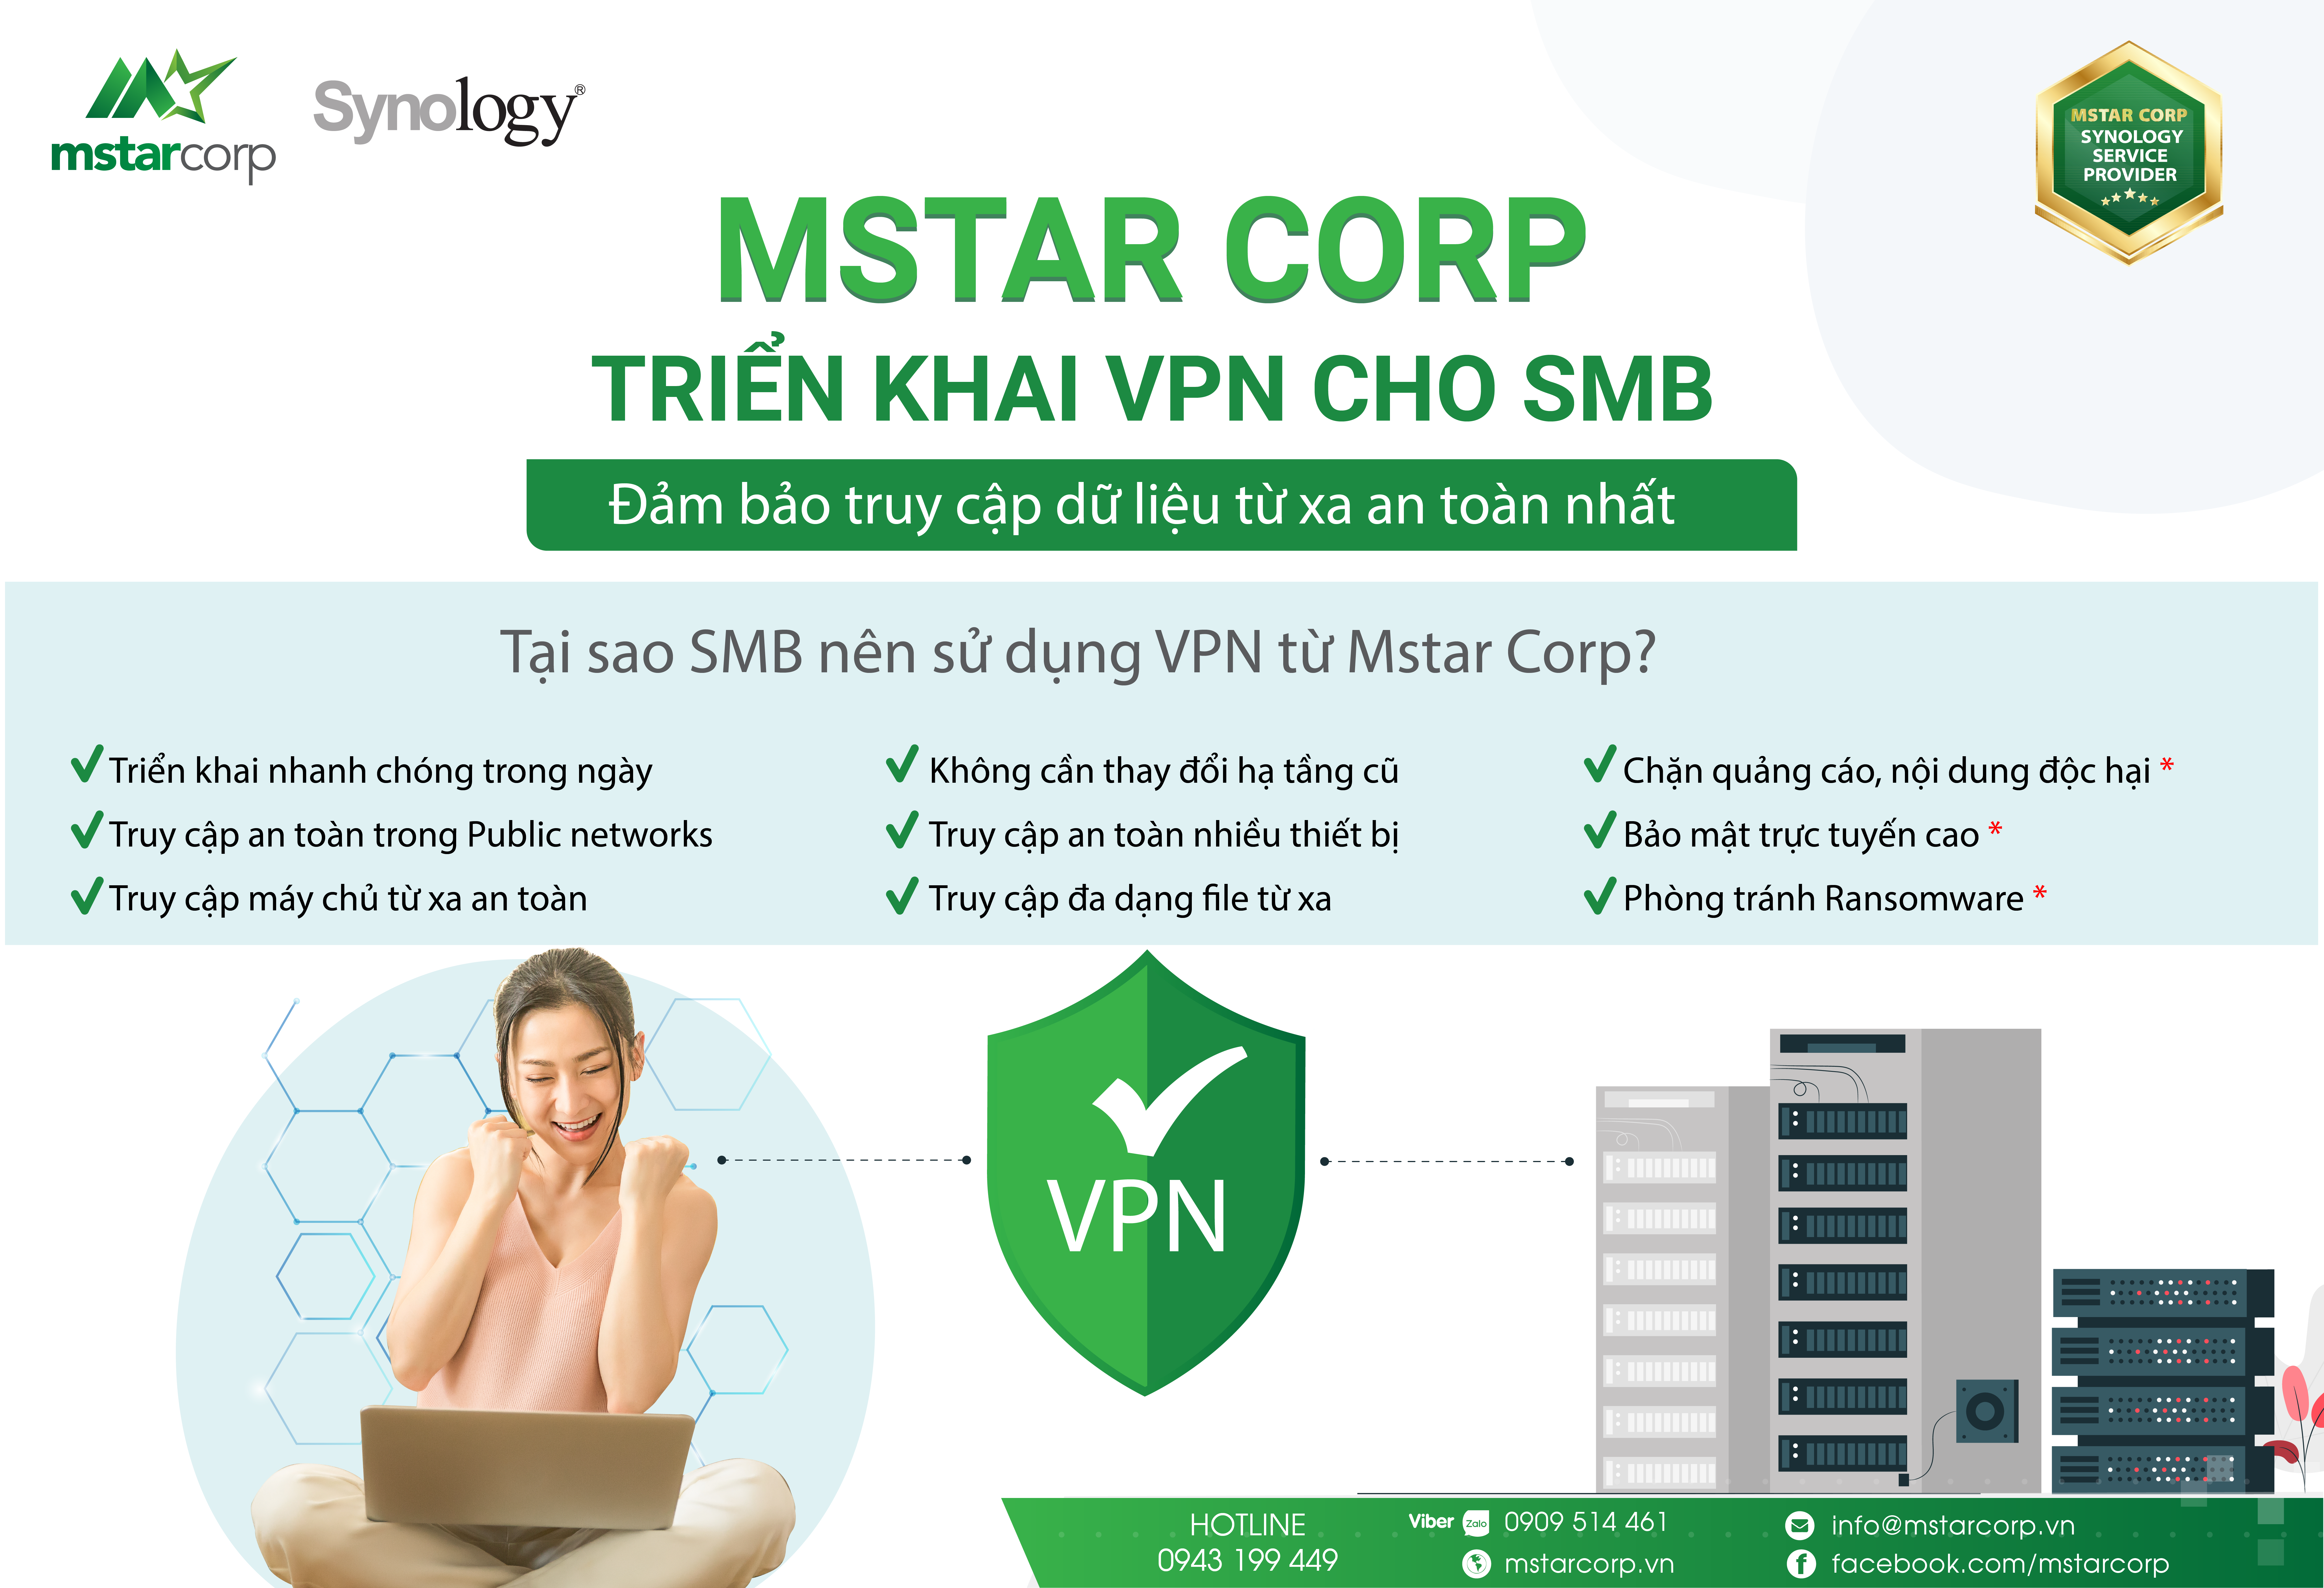 Dịch vụ VPN từ Mstar Corp